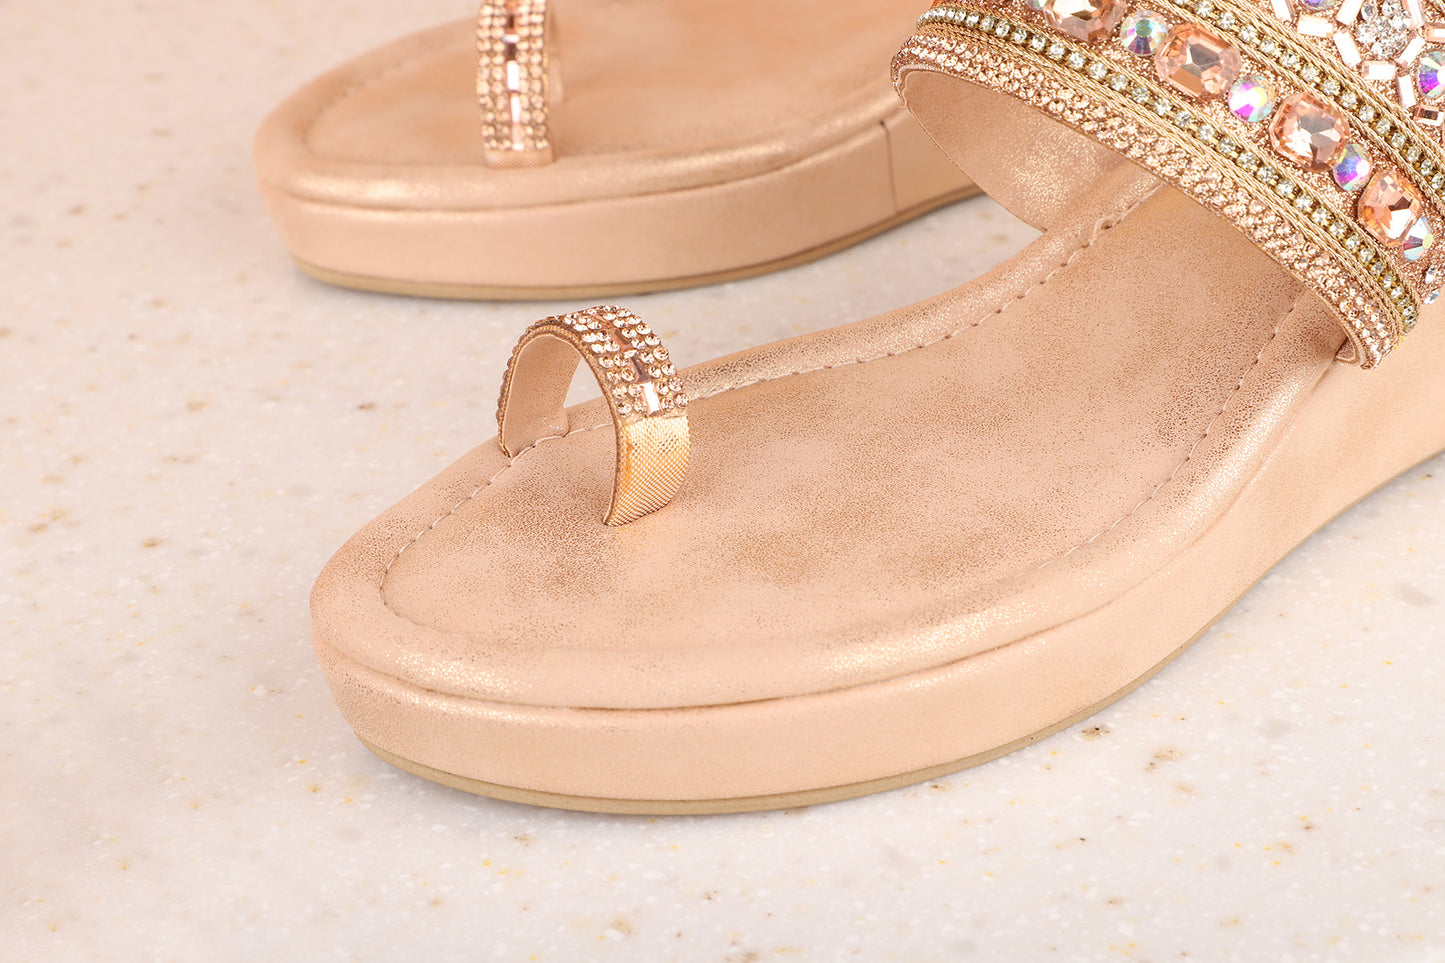 Women Rose Gold Embellished Wedge Sandals